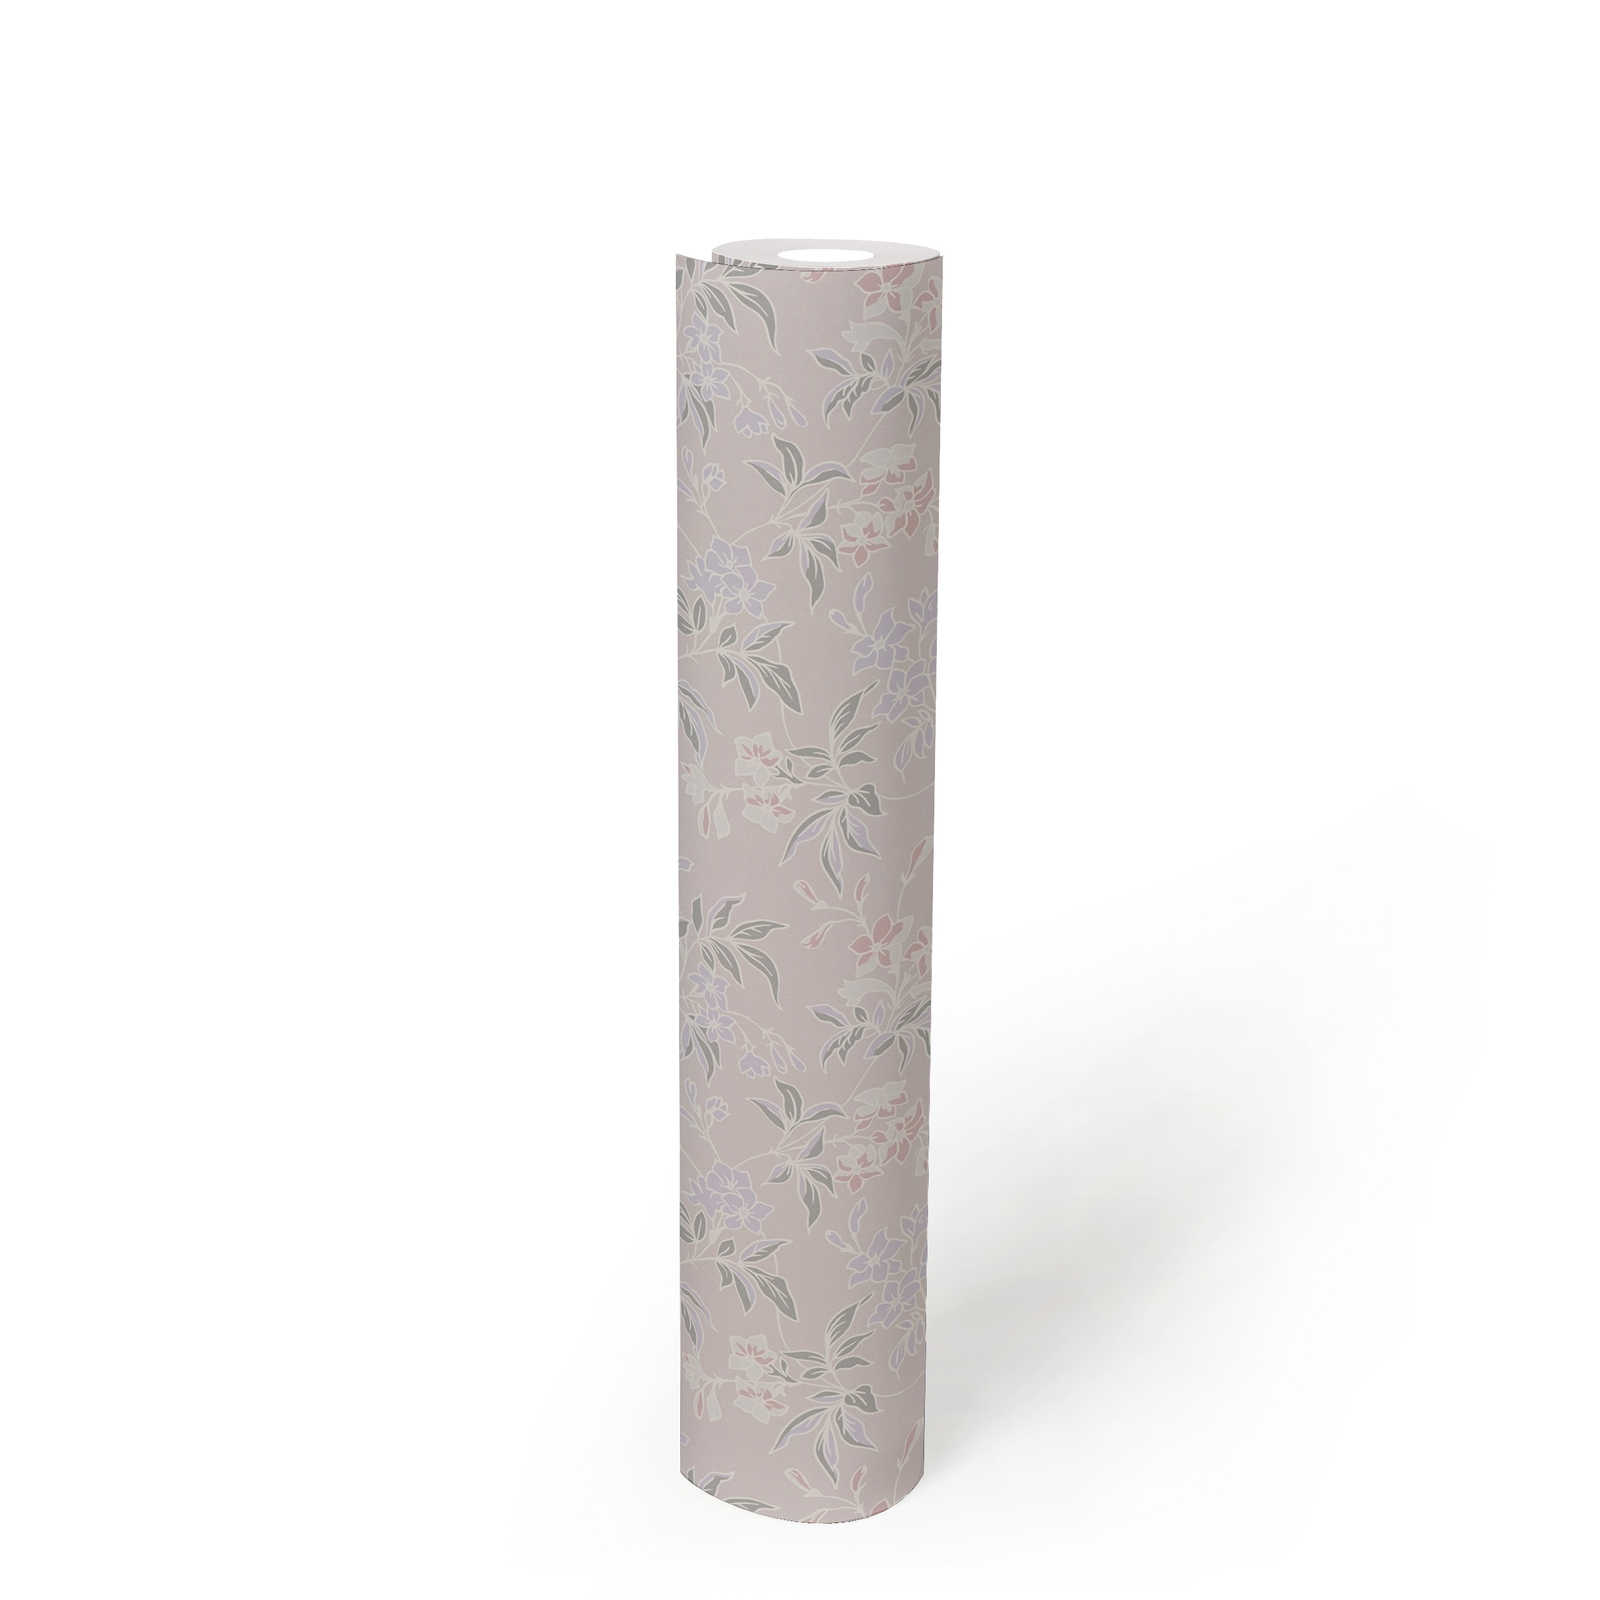             Papier peint intissé style anglais avec motifs floraux - crème, rose, violet
        